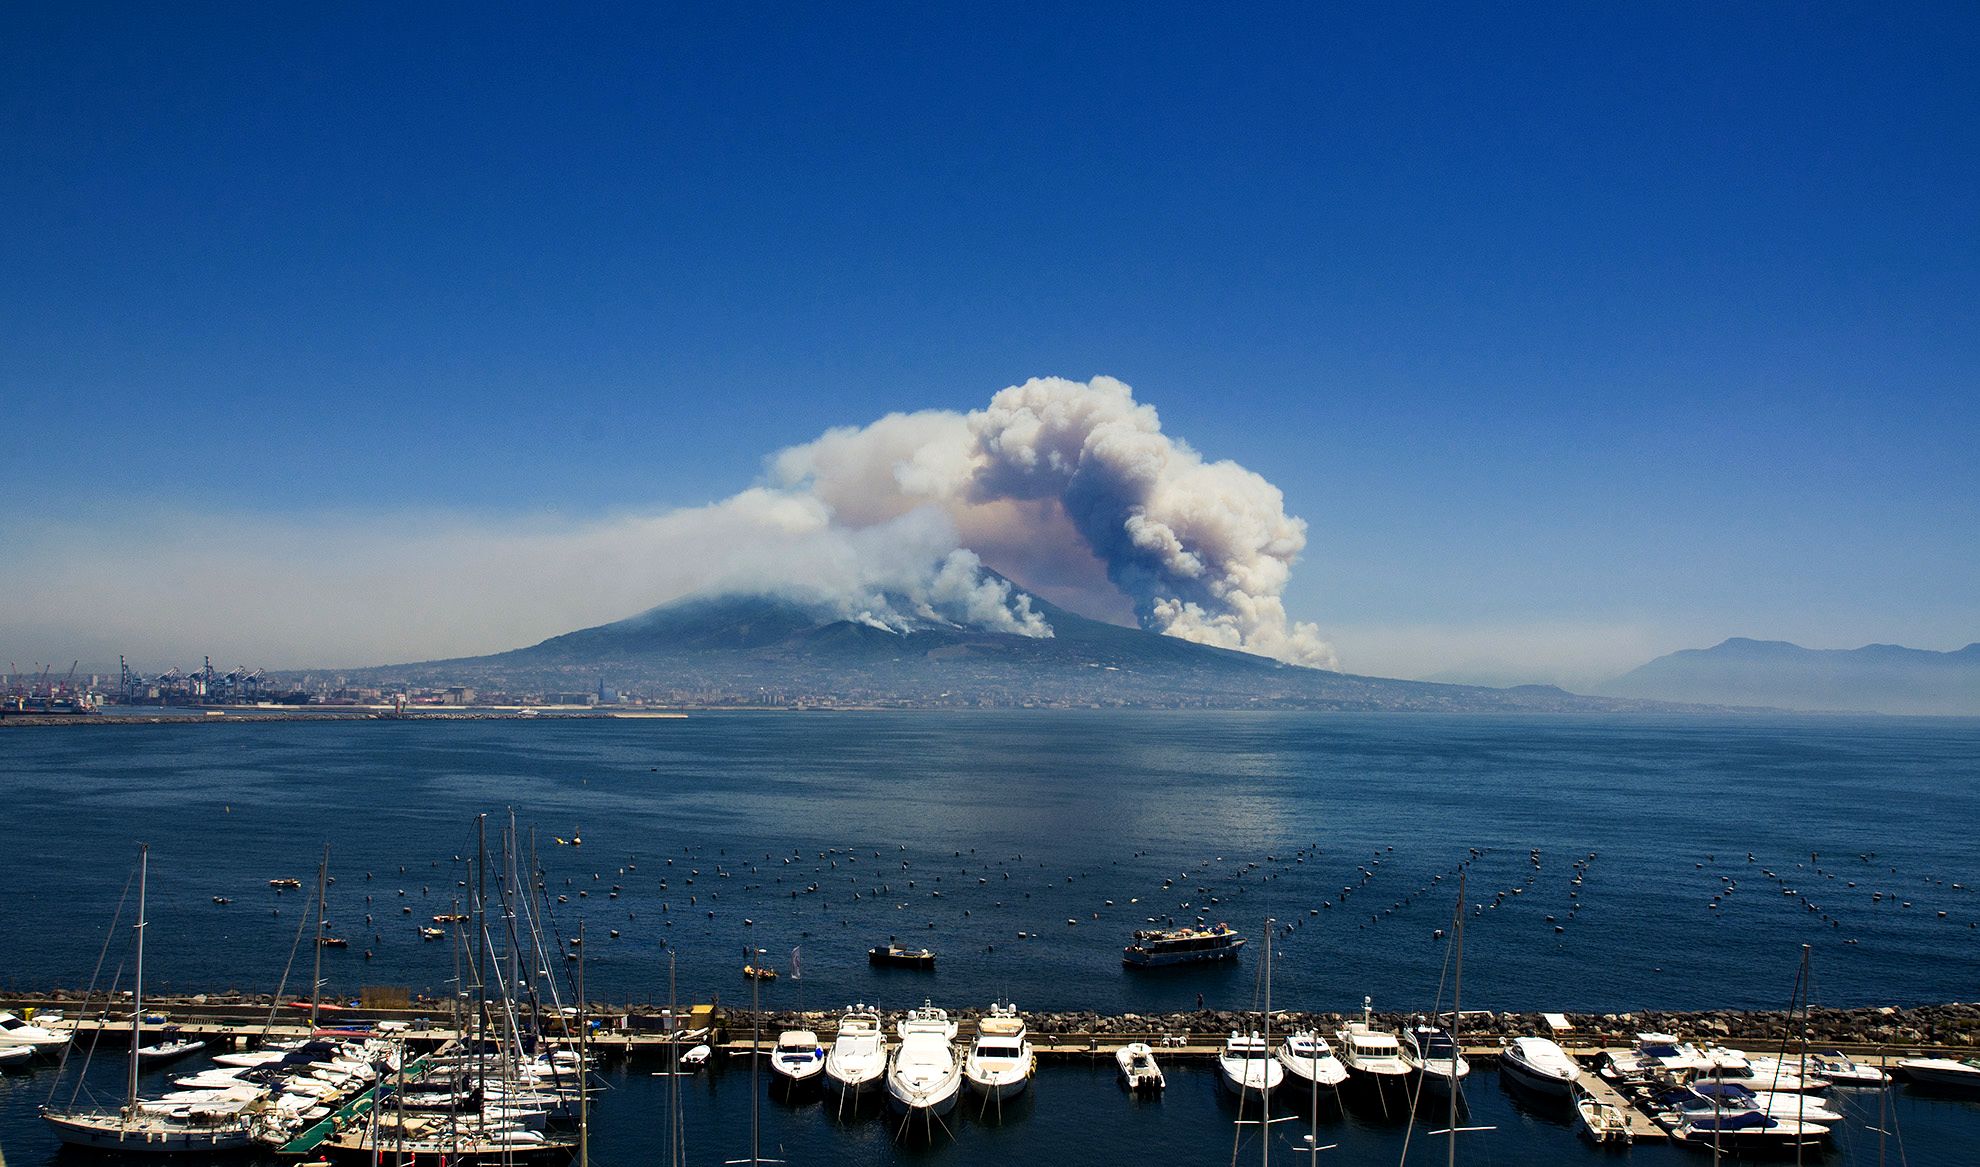 Fire on Mount Vesuvius...